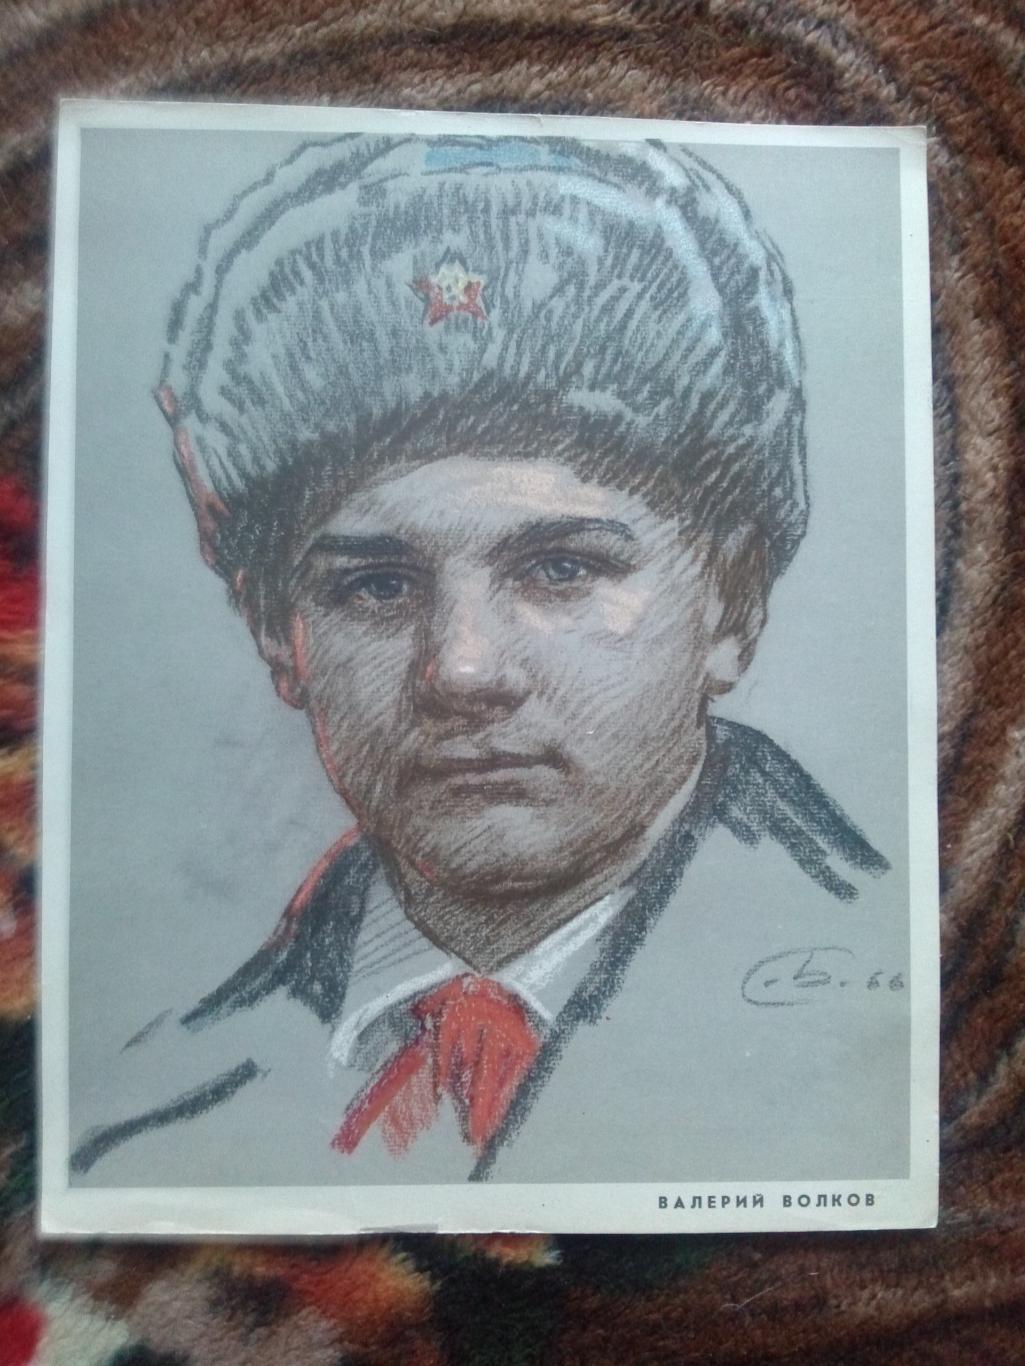 Валерий волков пионер герой фото